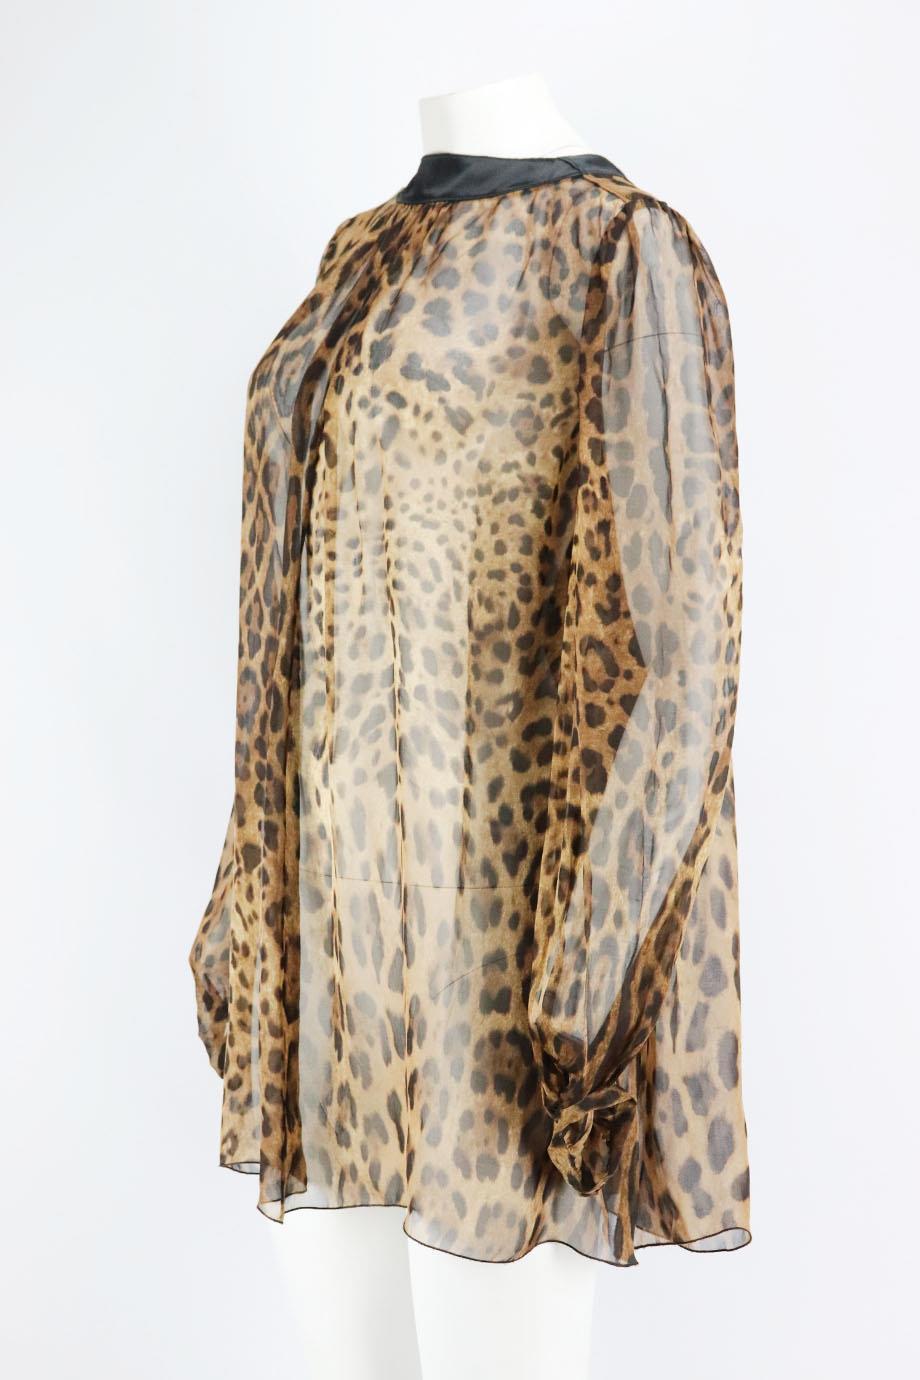 dolce gabbana leopard blouse